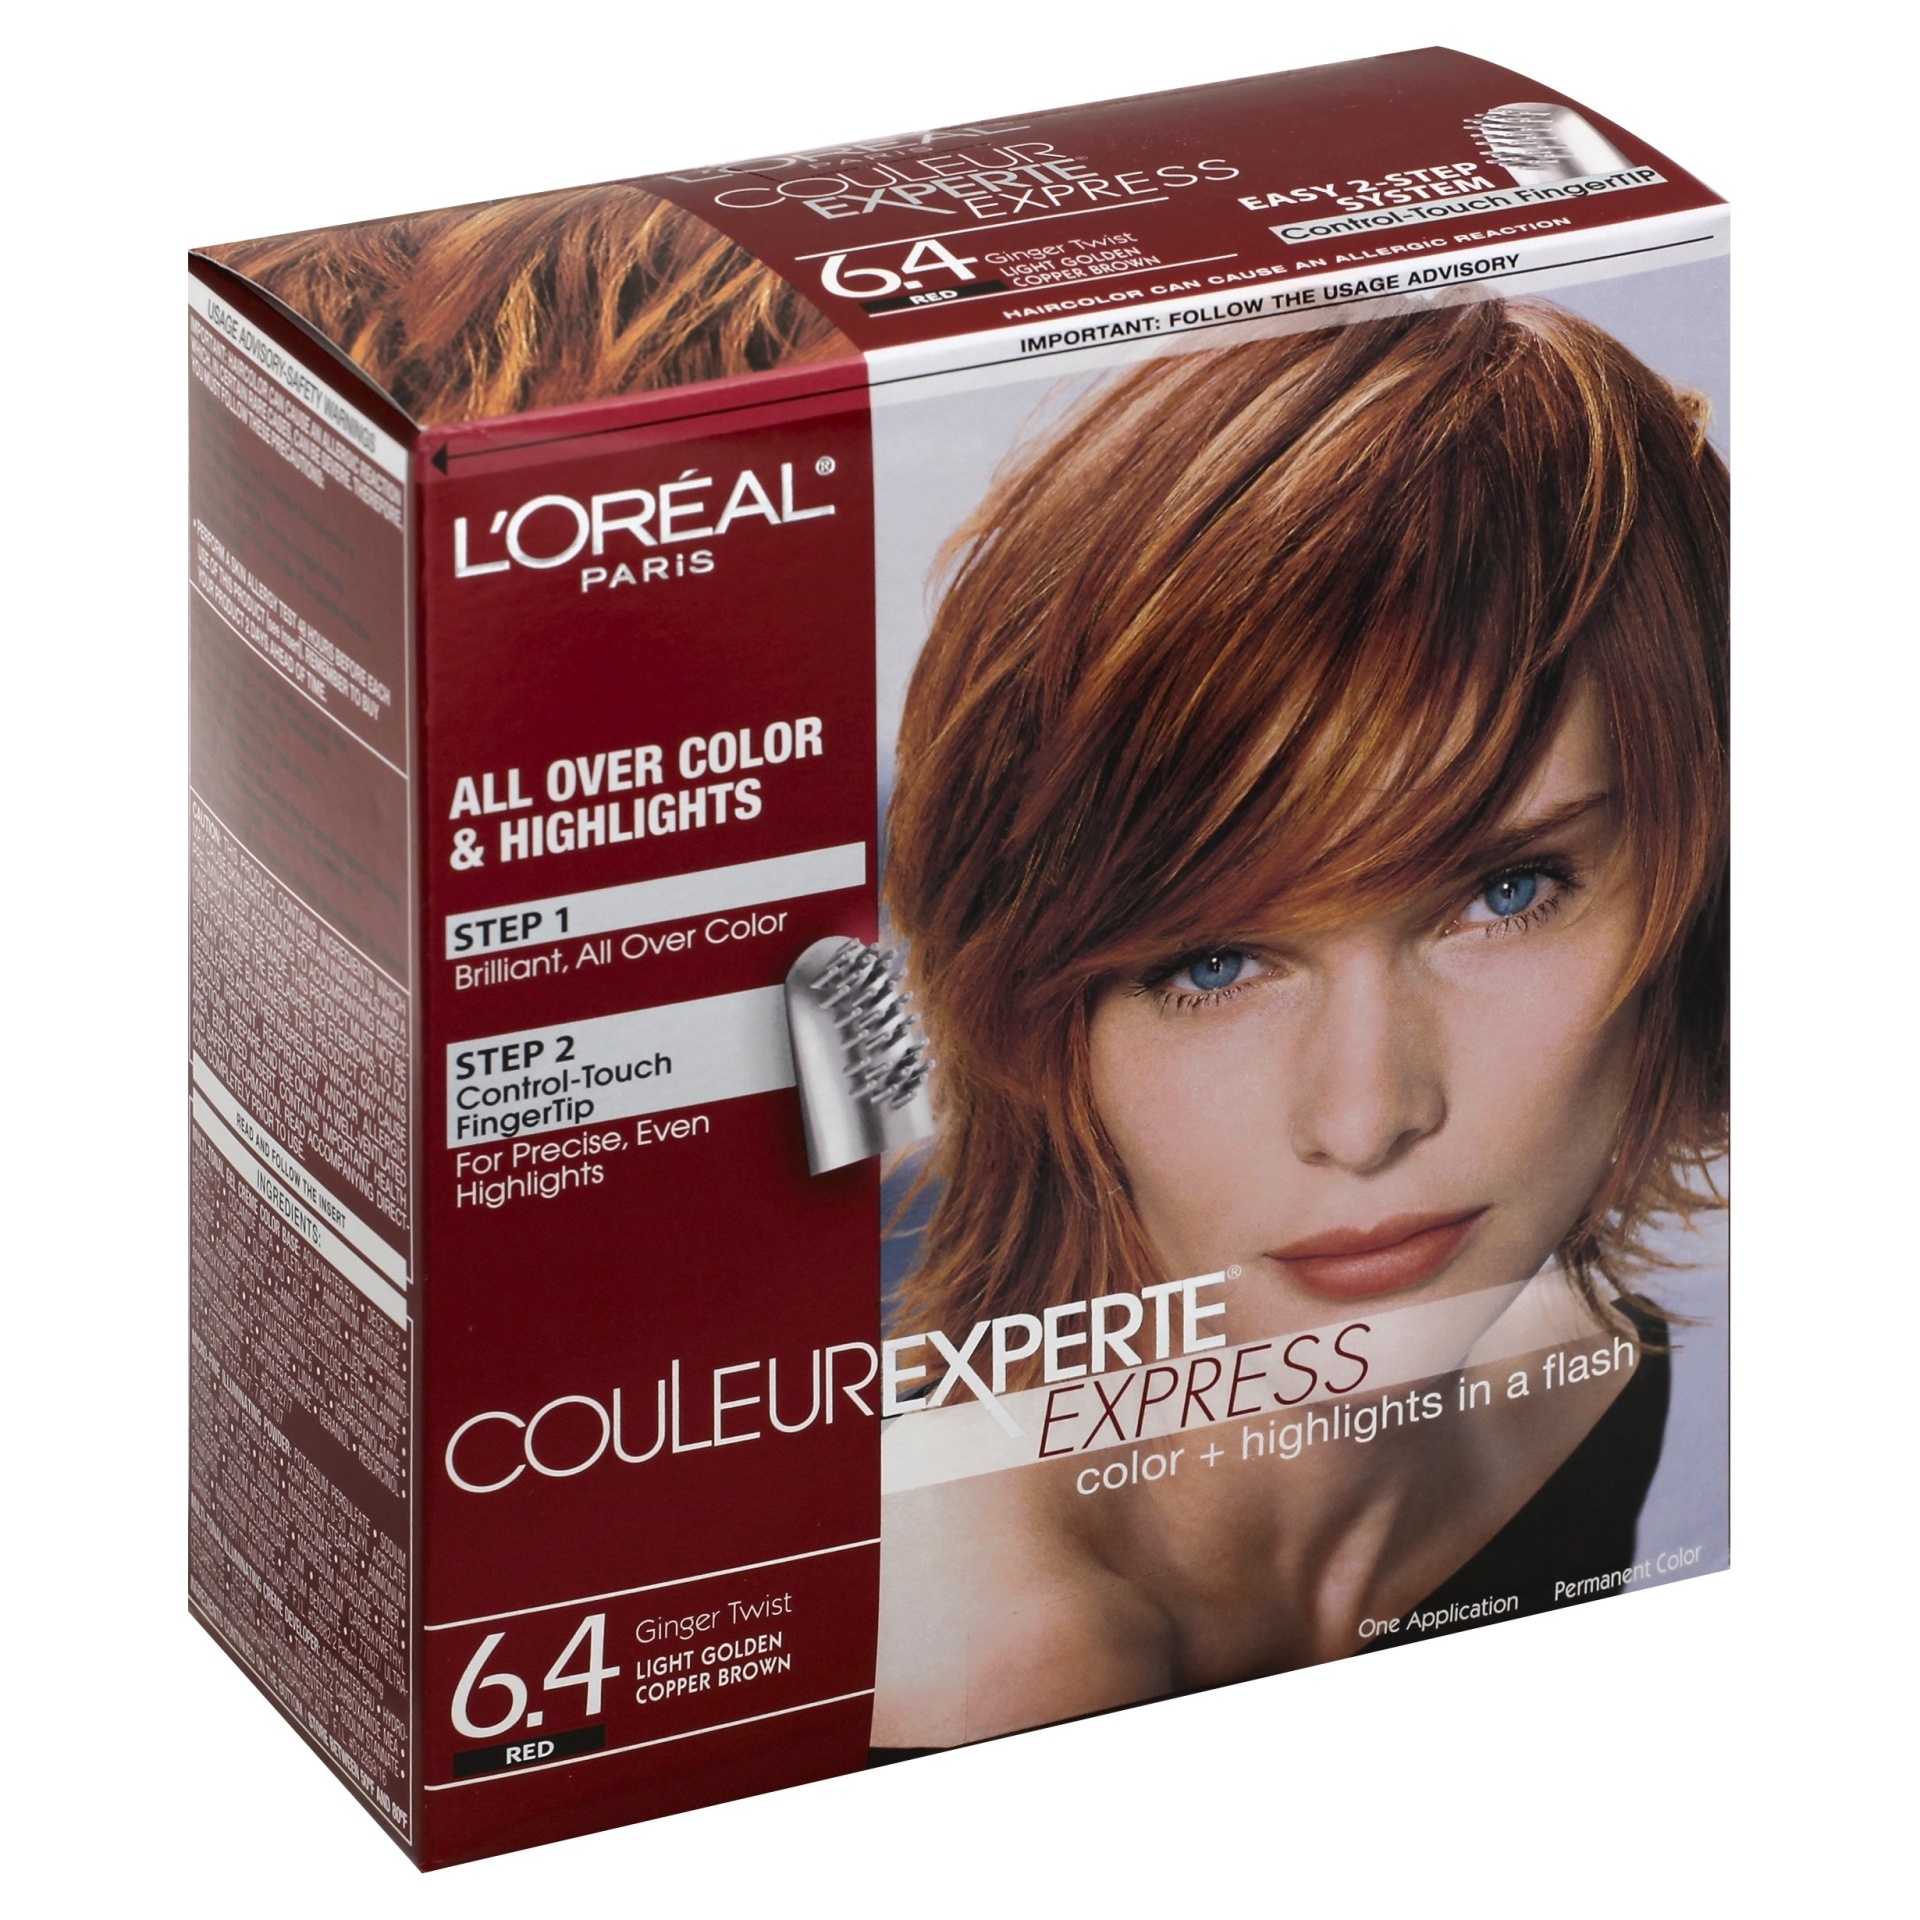 slide 1 of 8, L'Oréal Couleur Experte Express Color & Highlights in a Flash, Red Ginger Twist Light Golden Copper Brown 6.4, 1 kit